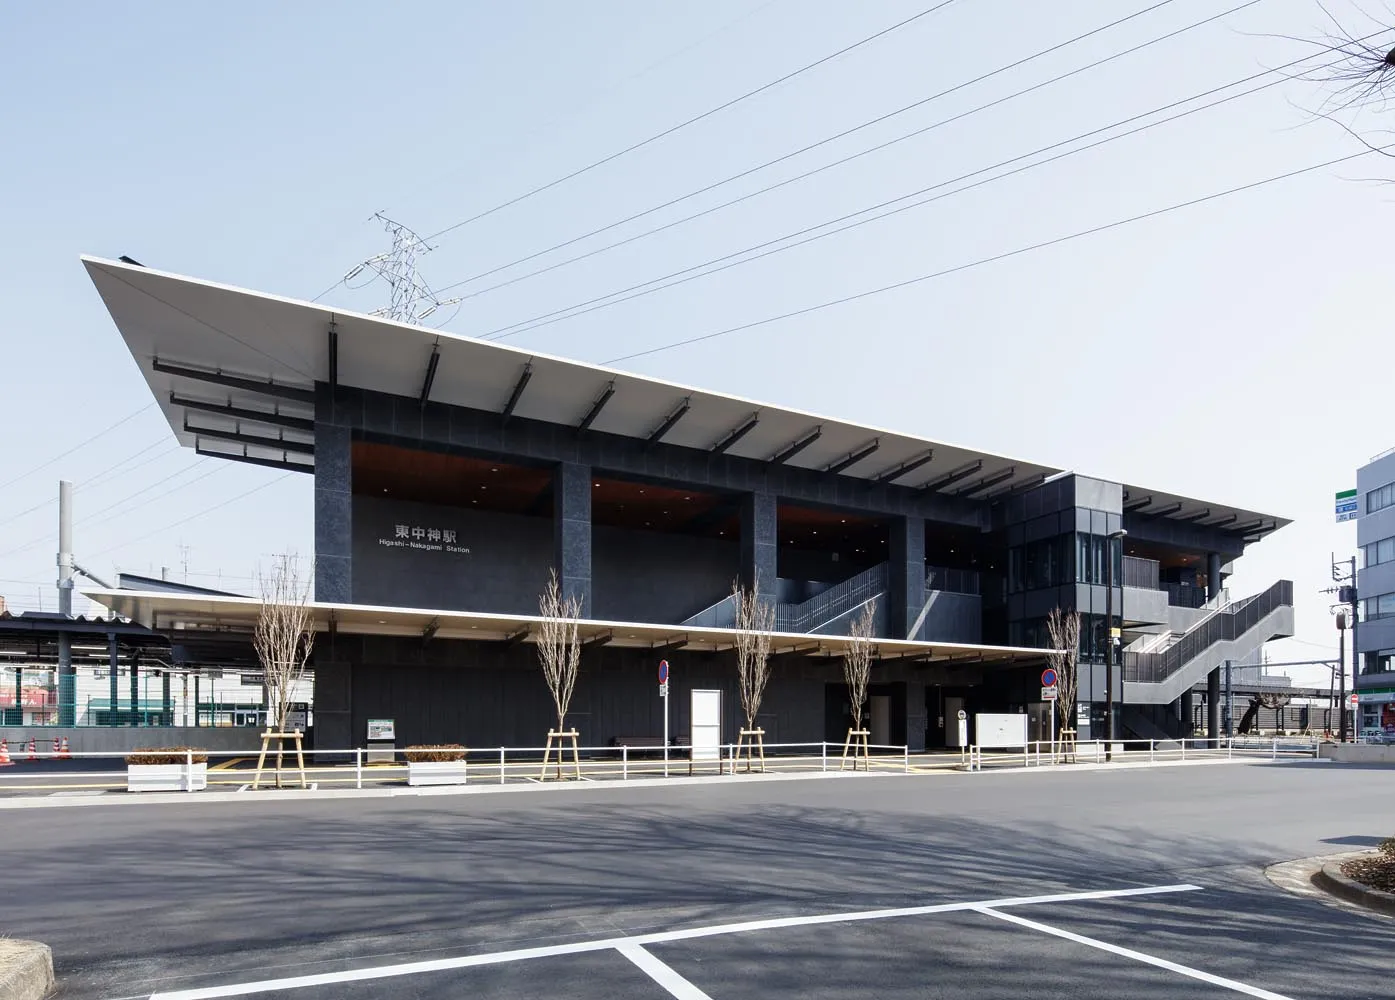 JR青梅線 東中神駅橋上本屋新築工事のサムネイル画像です